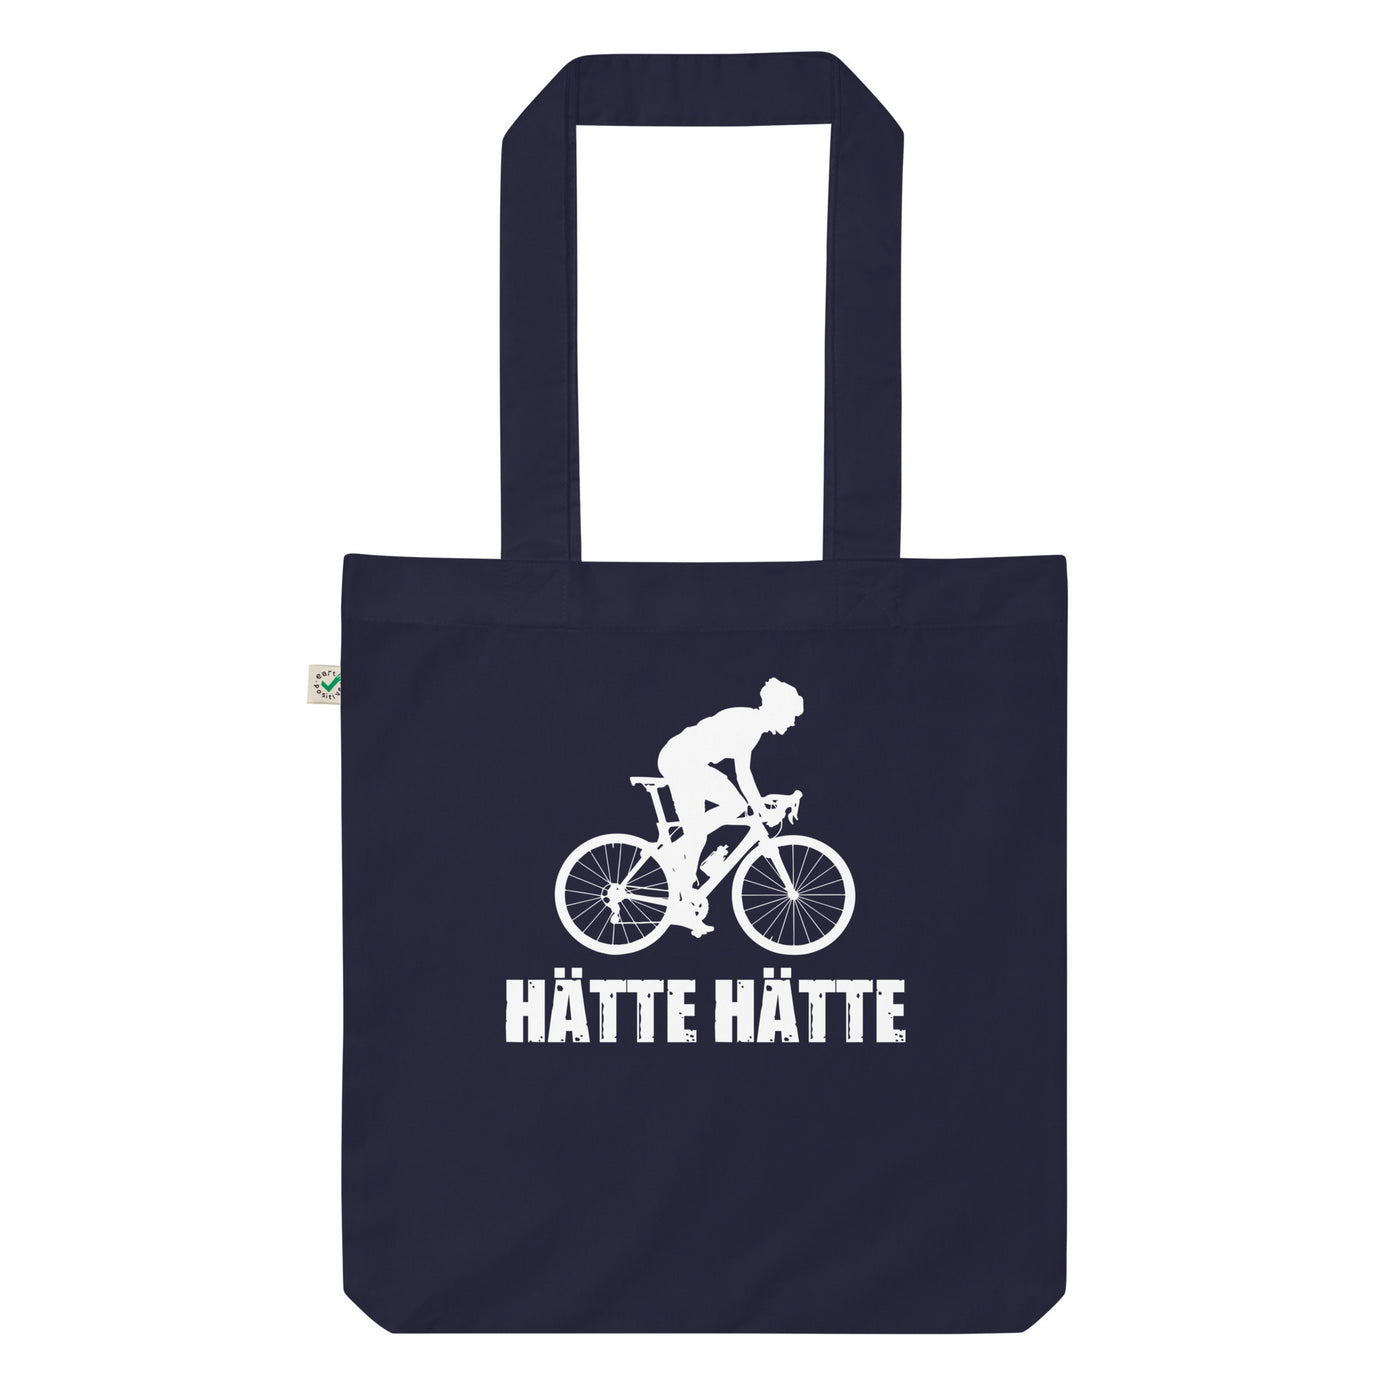 Hatte Hatte 2 - Organic Einkaufstasche fahrrad